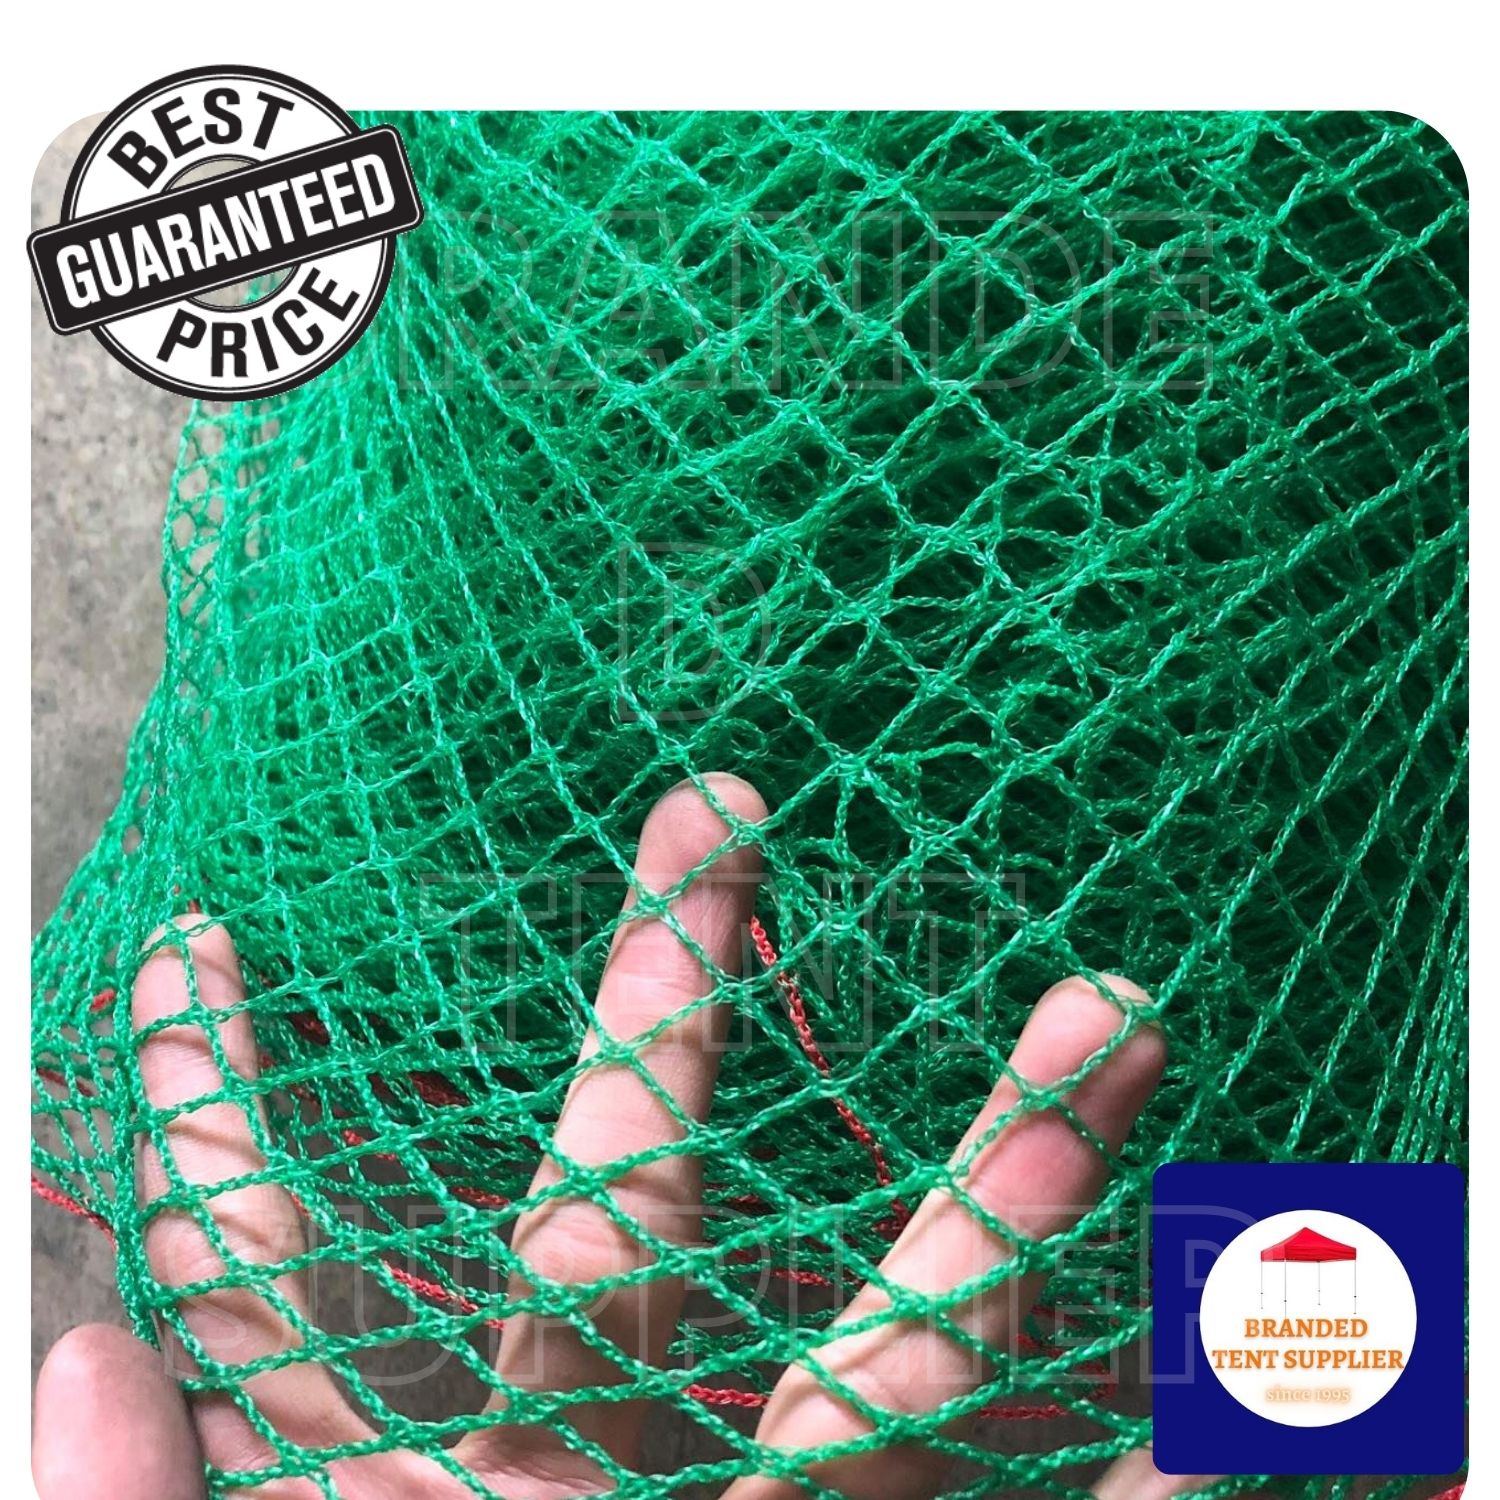 18ft x 10 meters] S.H Double Net for Garden - Greenhouses